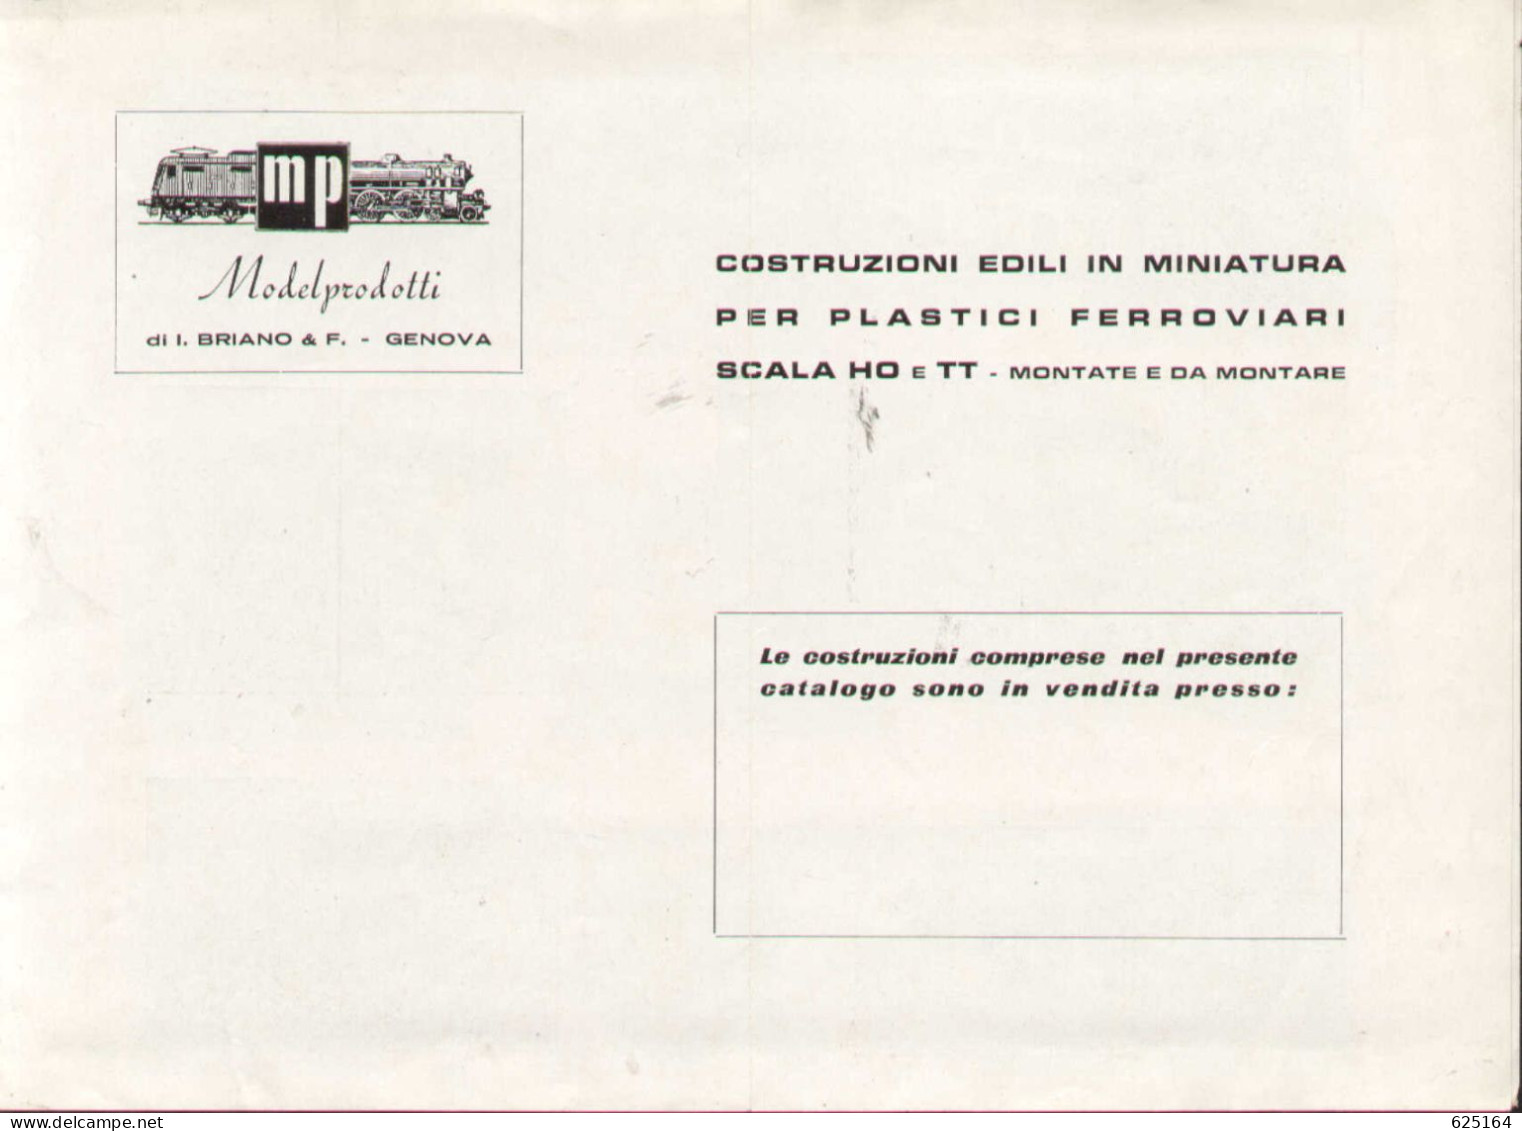 Catalogue MP ModelProdotti 1959? Ed. Italo Briano Genova Accessori HO - En Italien - Non Classificati